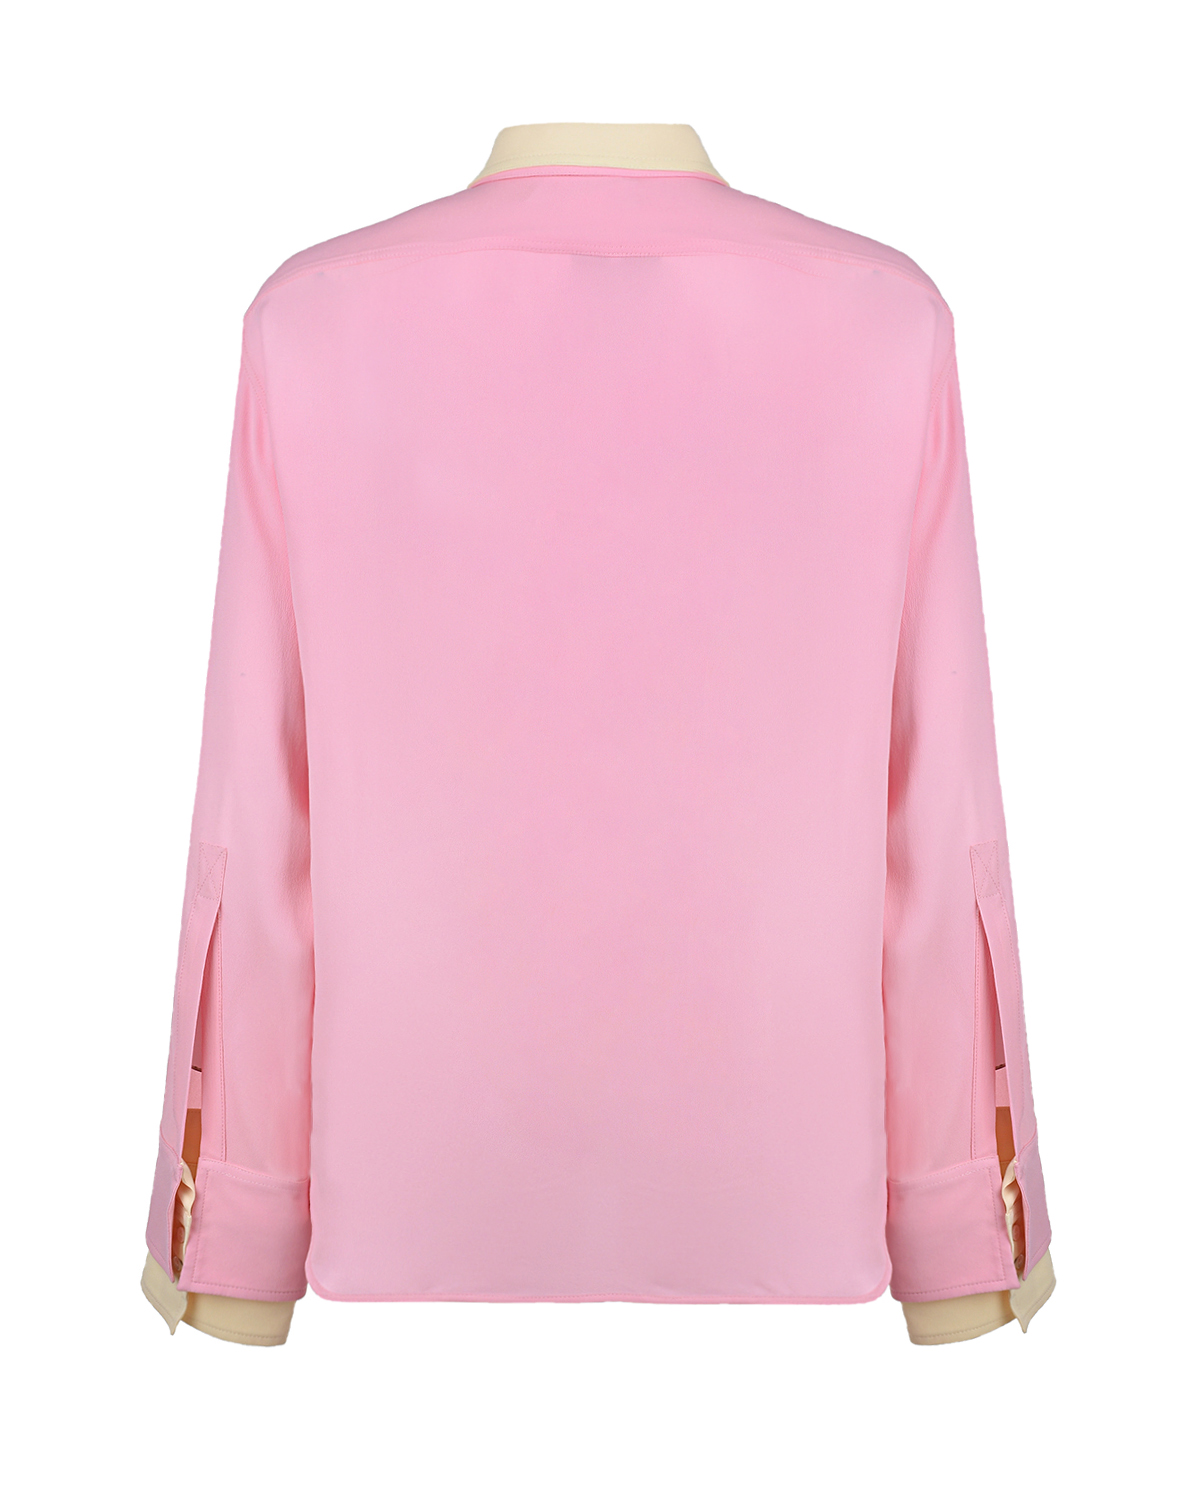 Двойная рубашка No. 21, размер 38, цвет розовый - фото 6